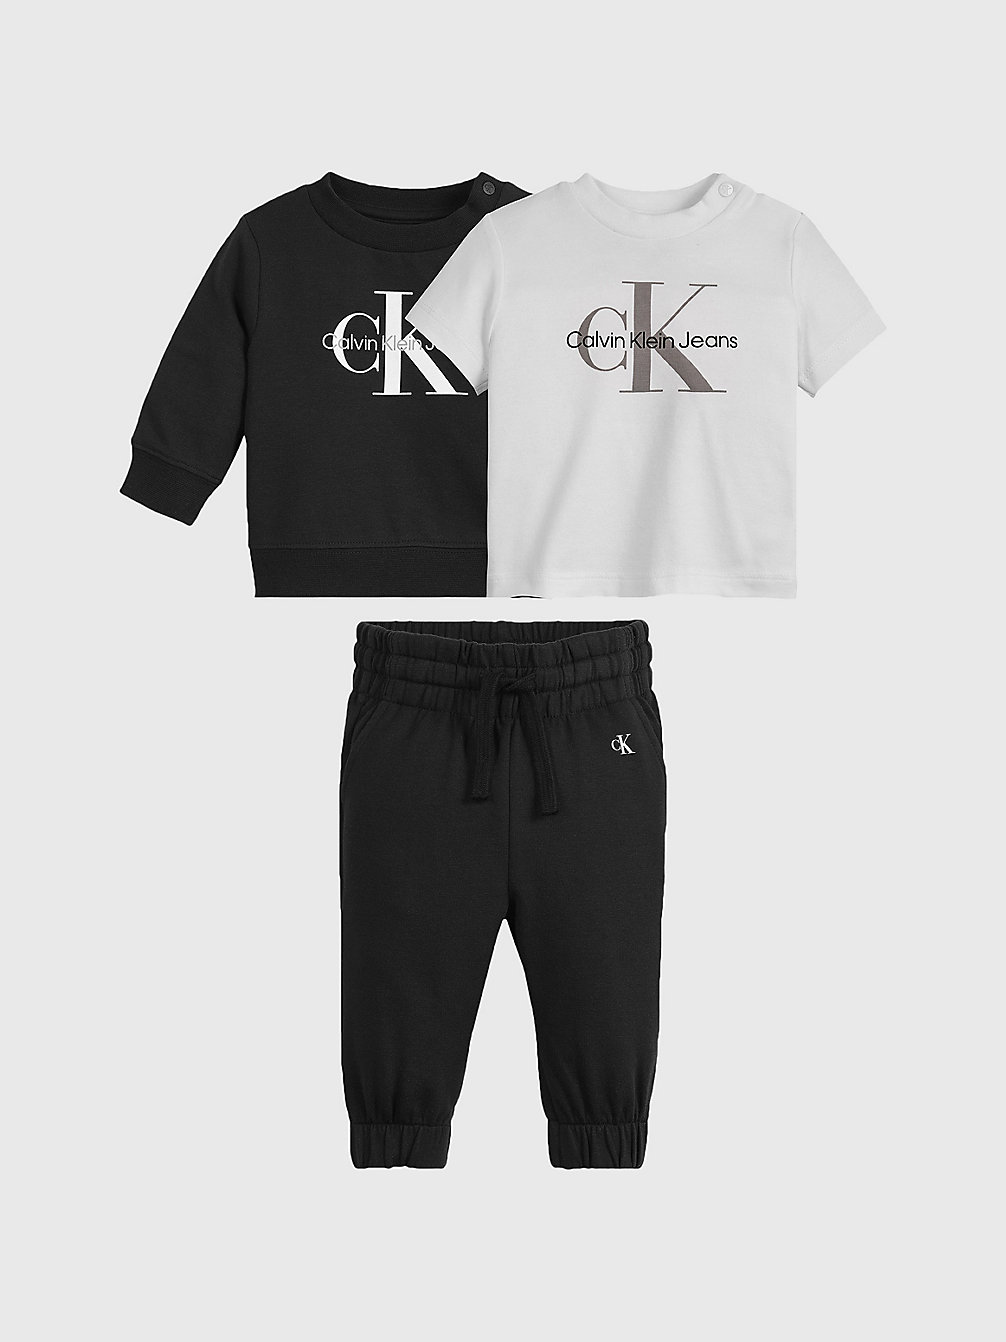 CK BLACK Coffret Cadeau Nouveau-Né undefined newborn Calvin Klein